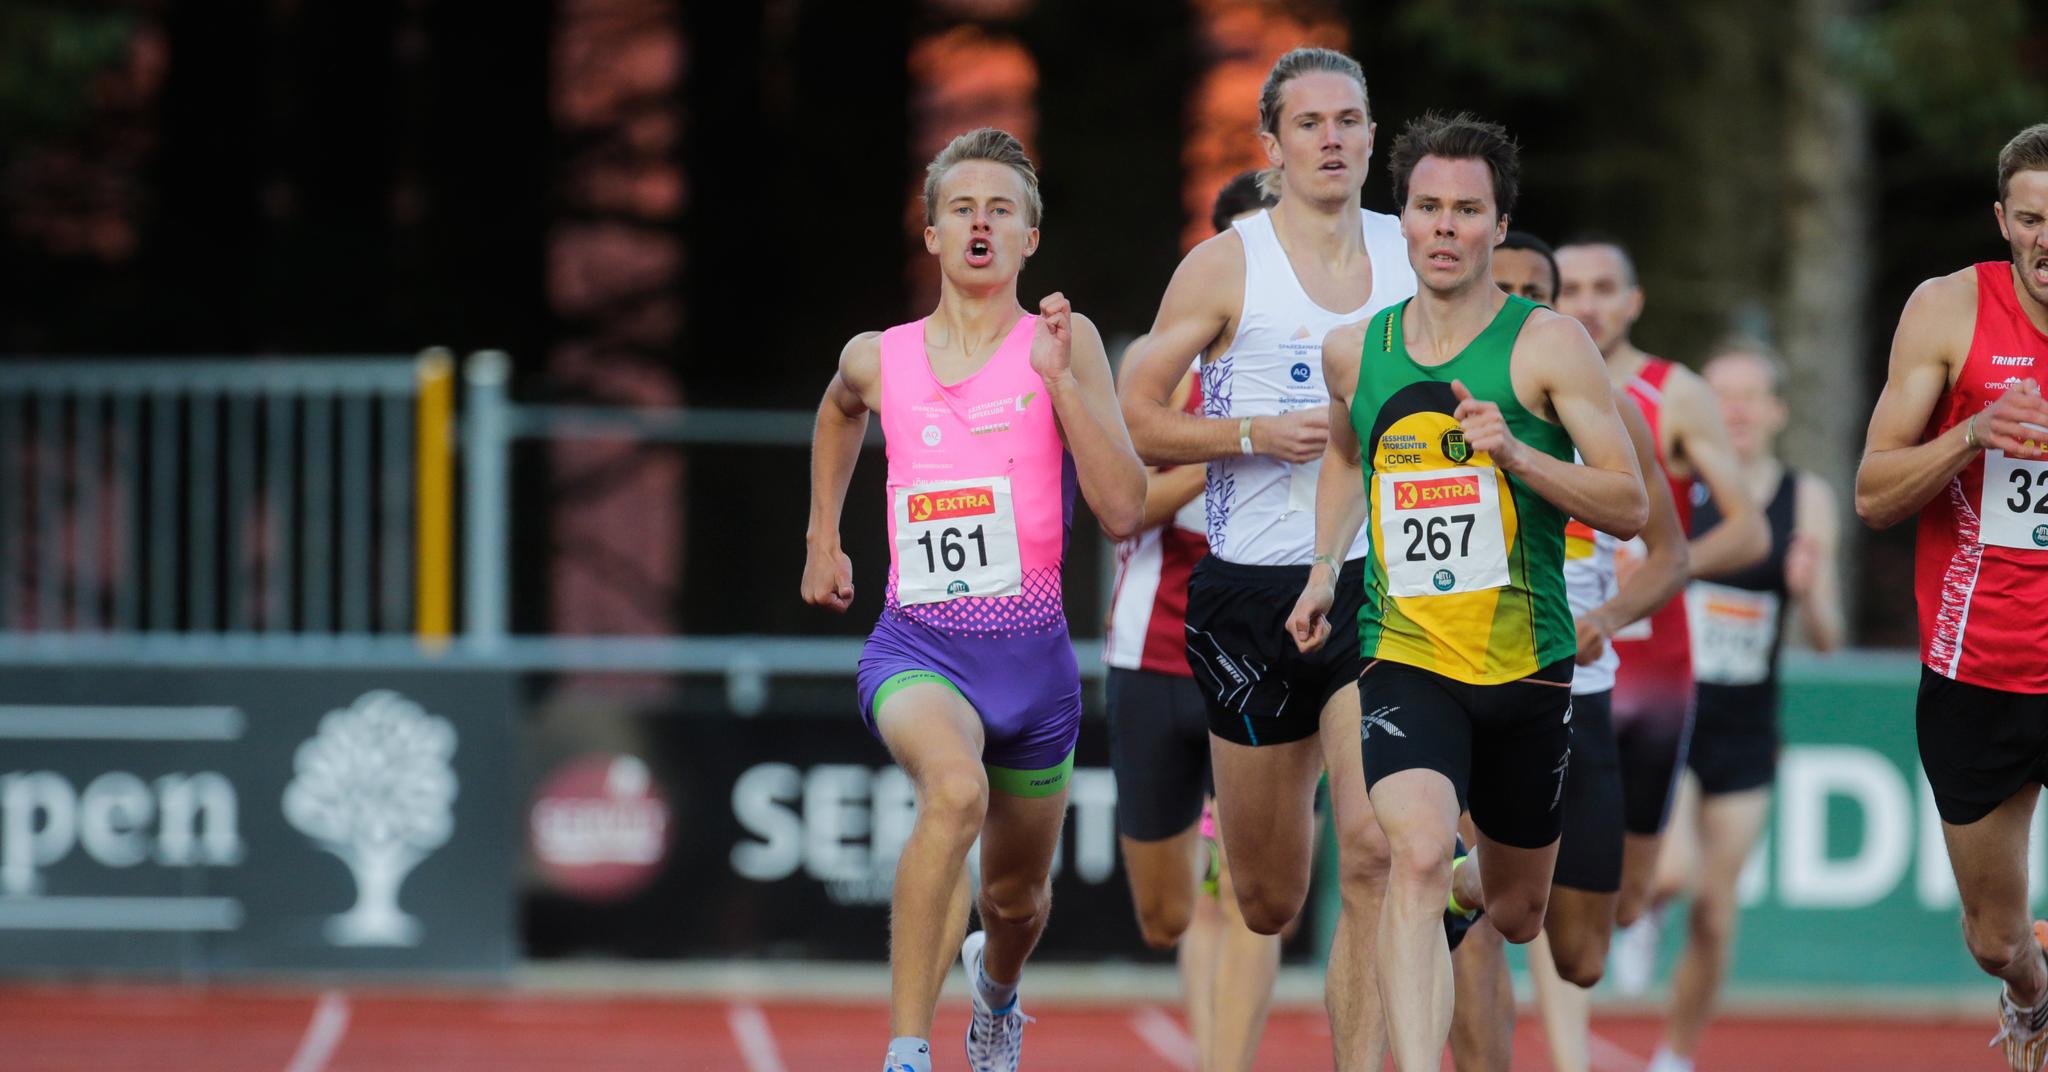 Sigurd Tveit (i rosa) er i ferd med å få karrieren tilbake på skinner etter store skadeproblemer, og stormet i helga inn til gull i junior-NM på spesialdistansen 800 meter.